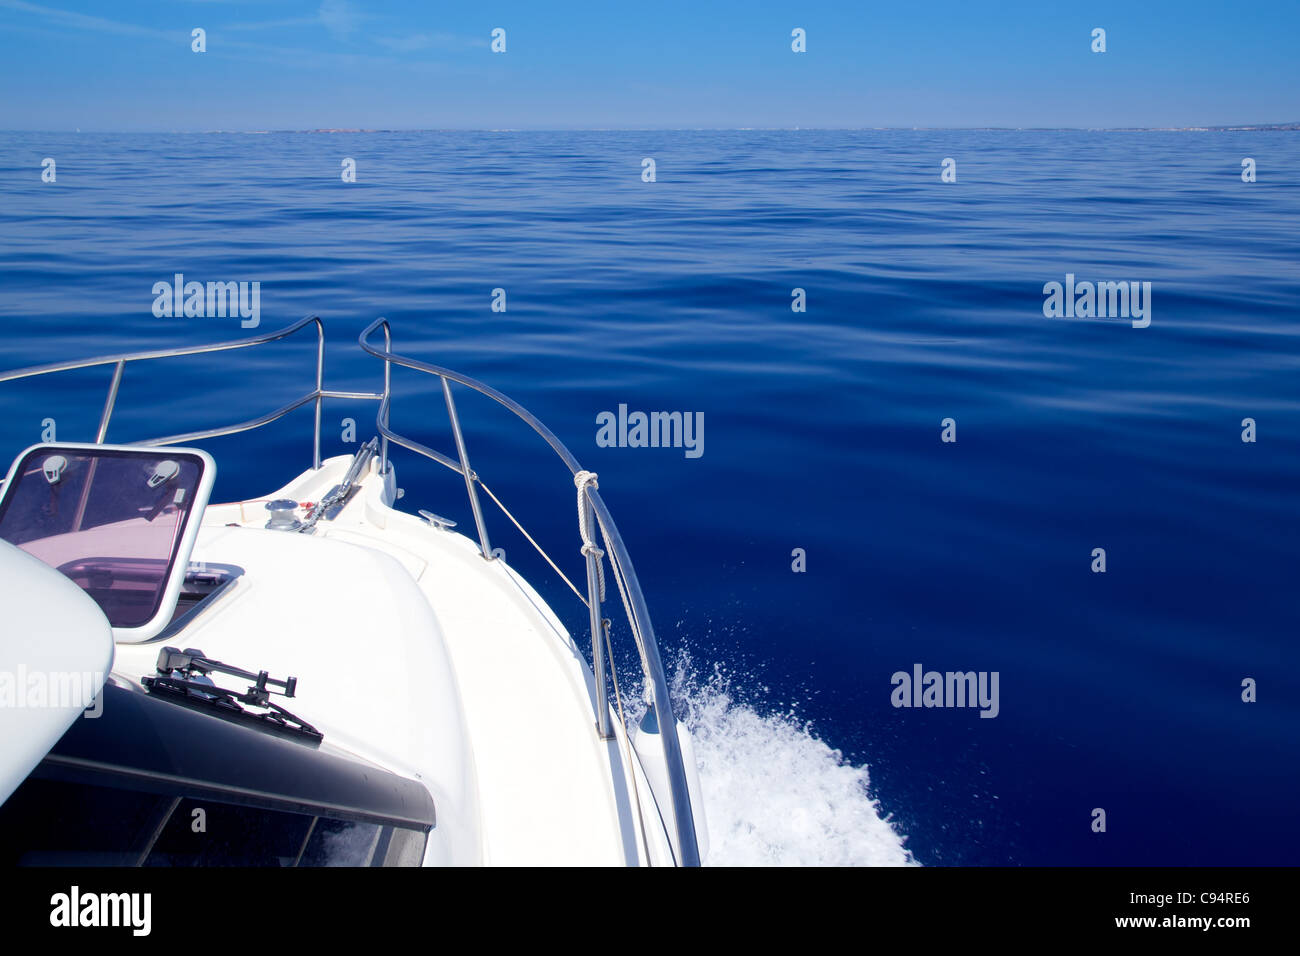 Bateau à voile à hublot ouvert arc en bleu mer calme durant les vacances d'été Banque D'Images